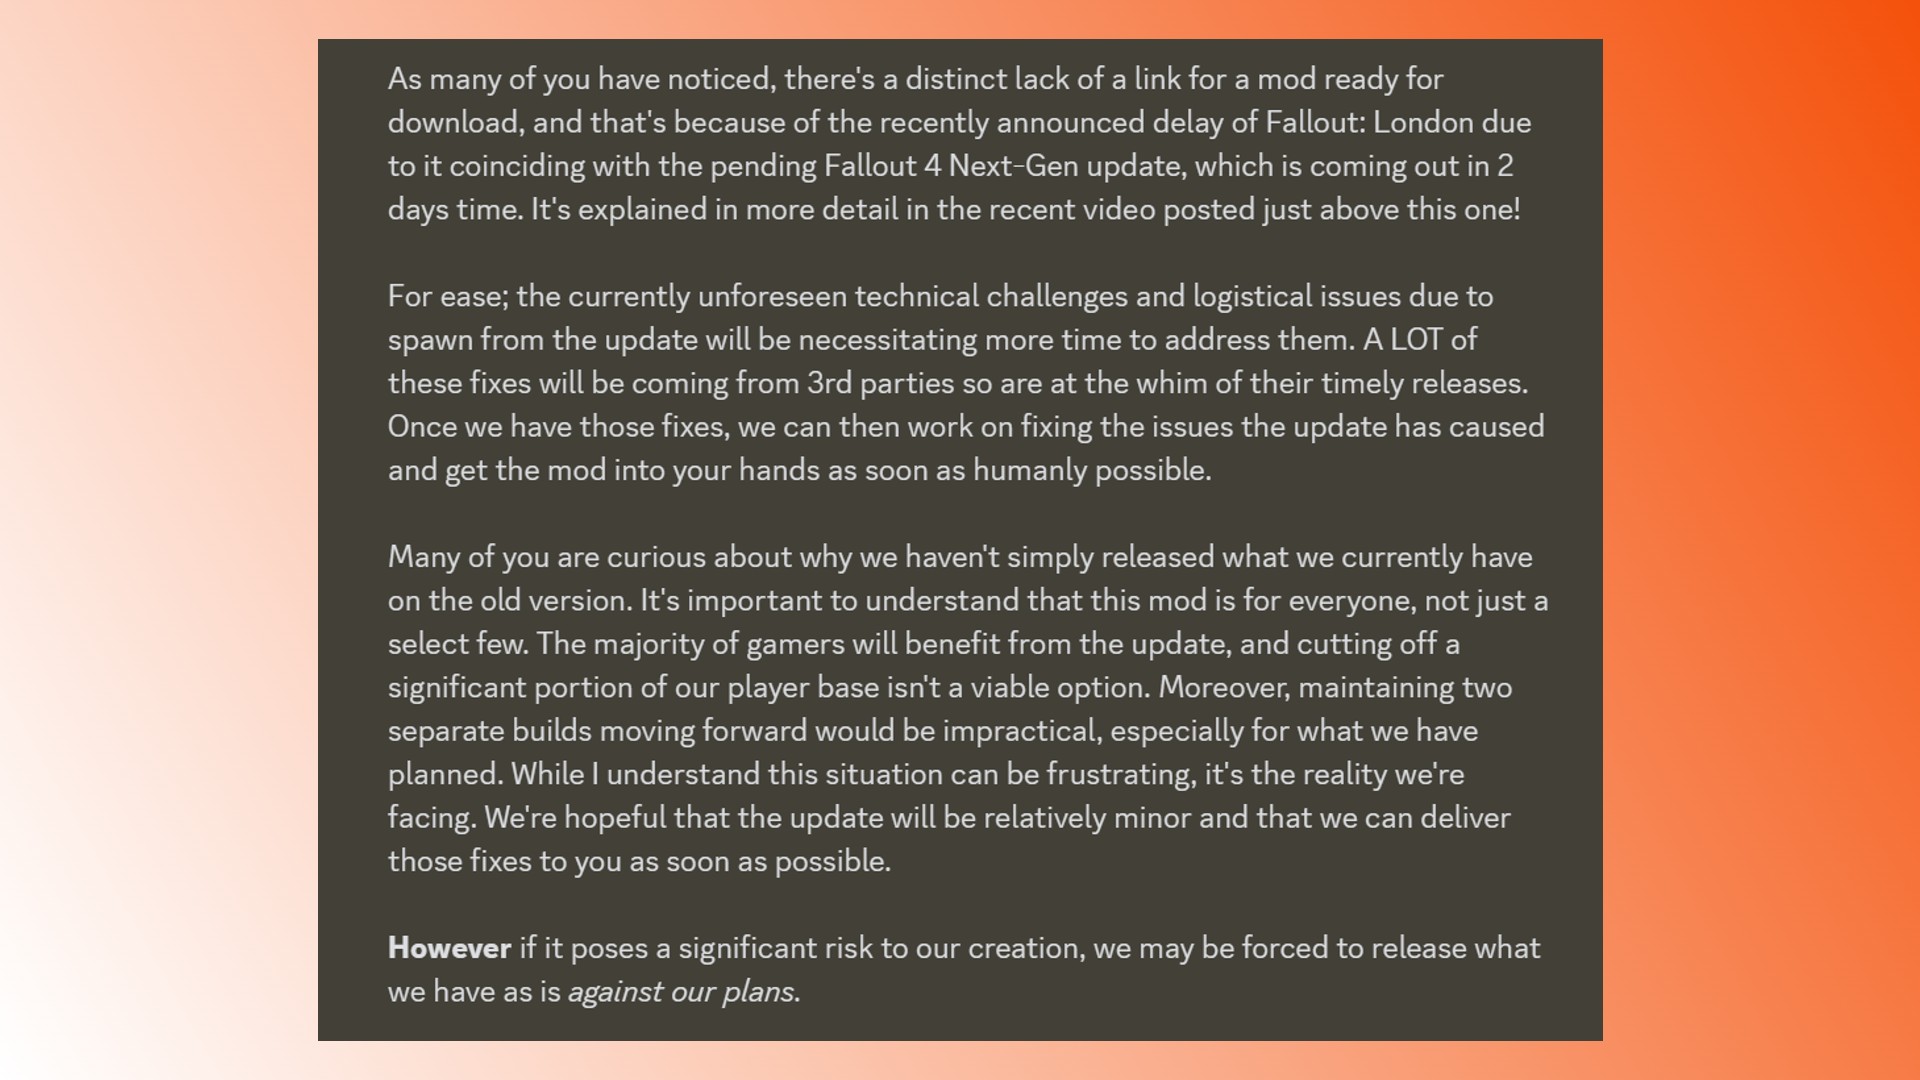 Fecha de lanzamiento de Fallout London: declaración del desarrollador del mod de Fallout 4 Fallout London